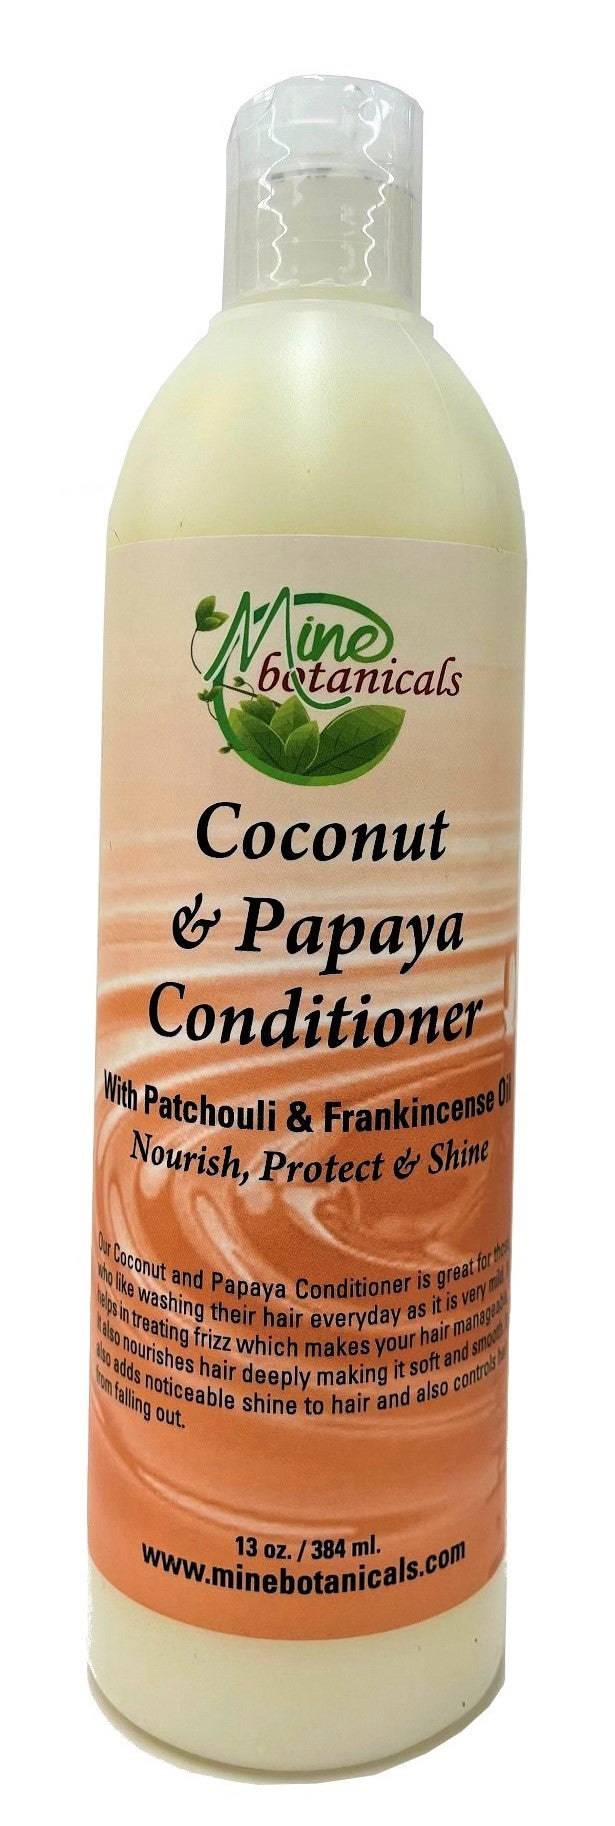 Coconut & Papaya Conditioner